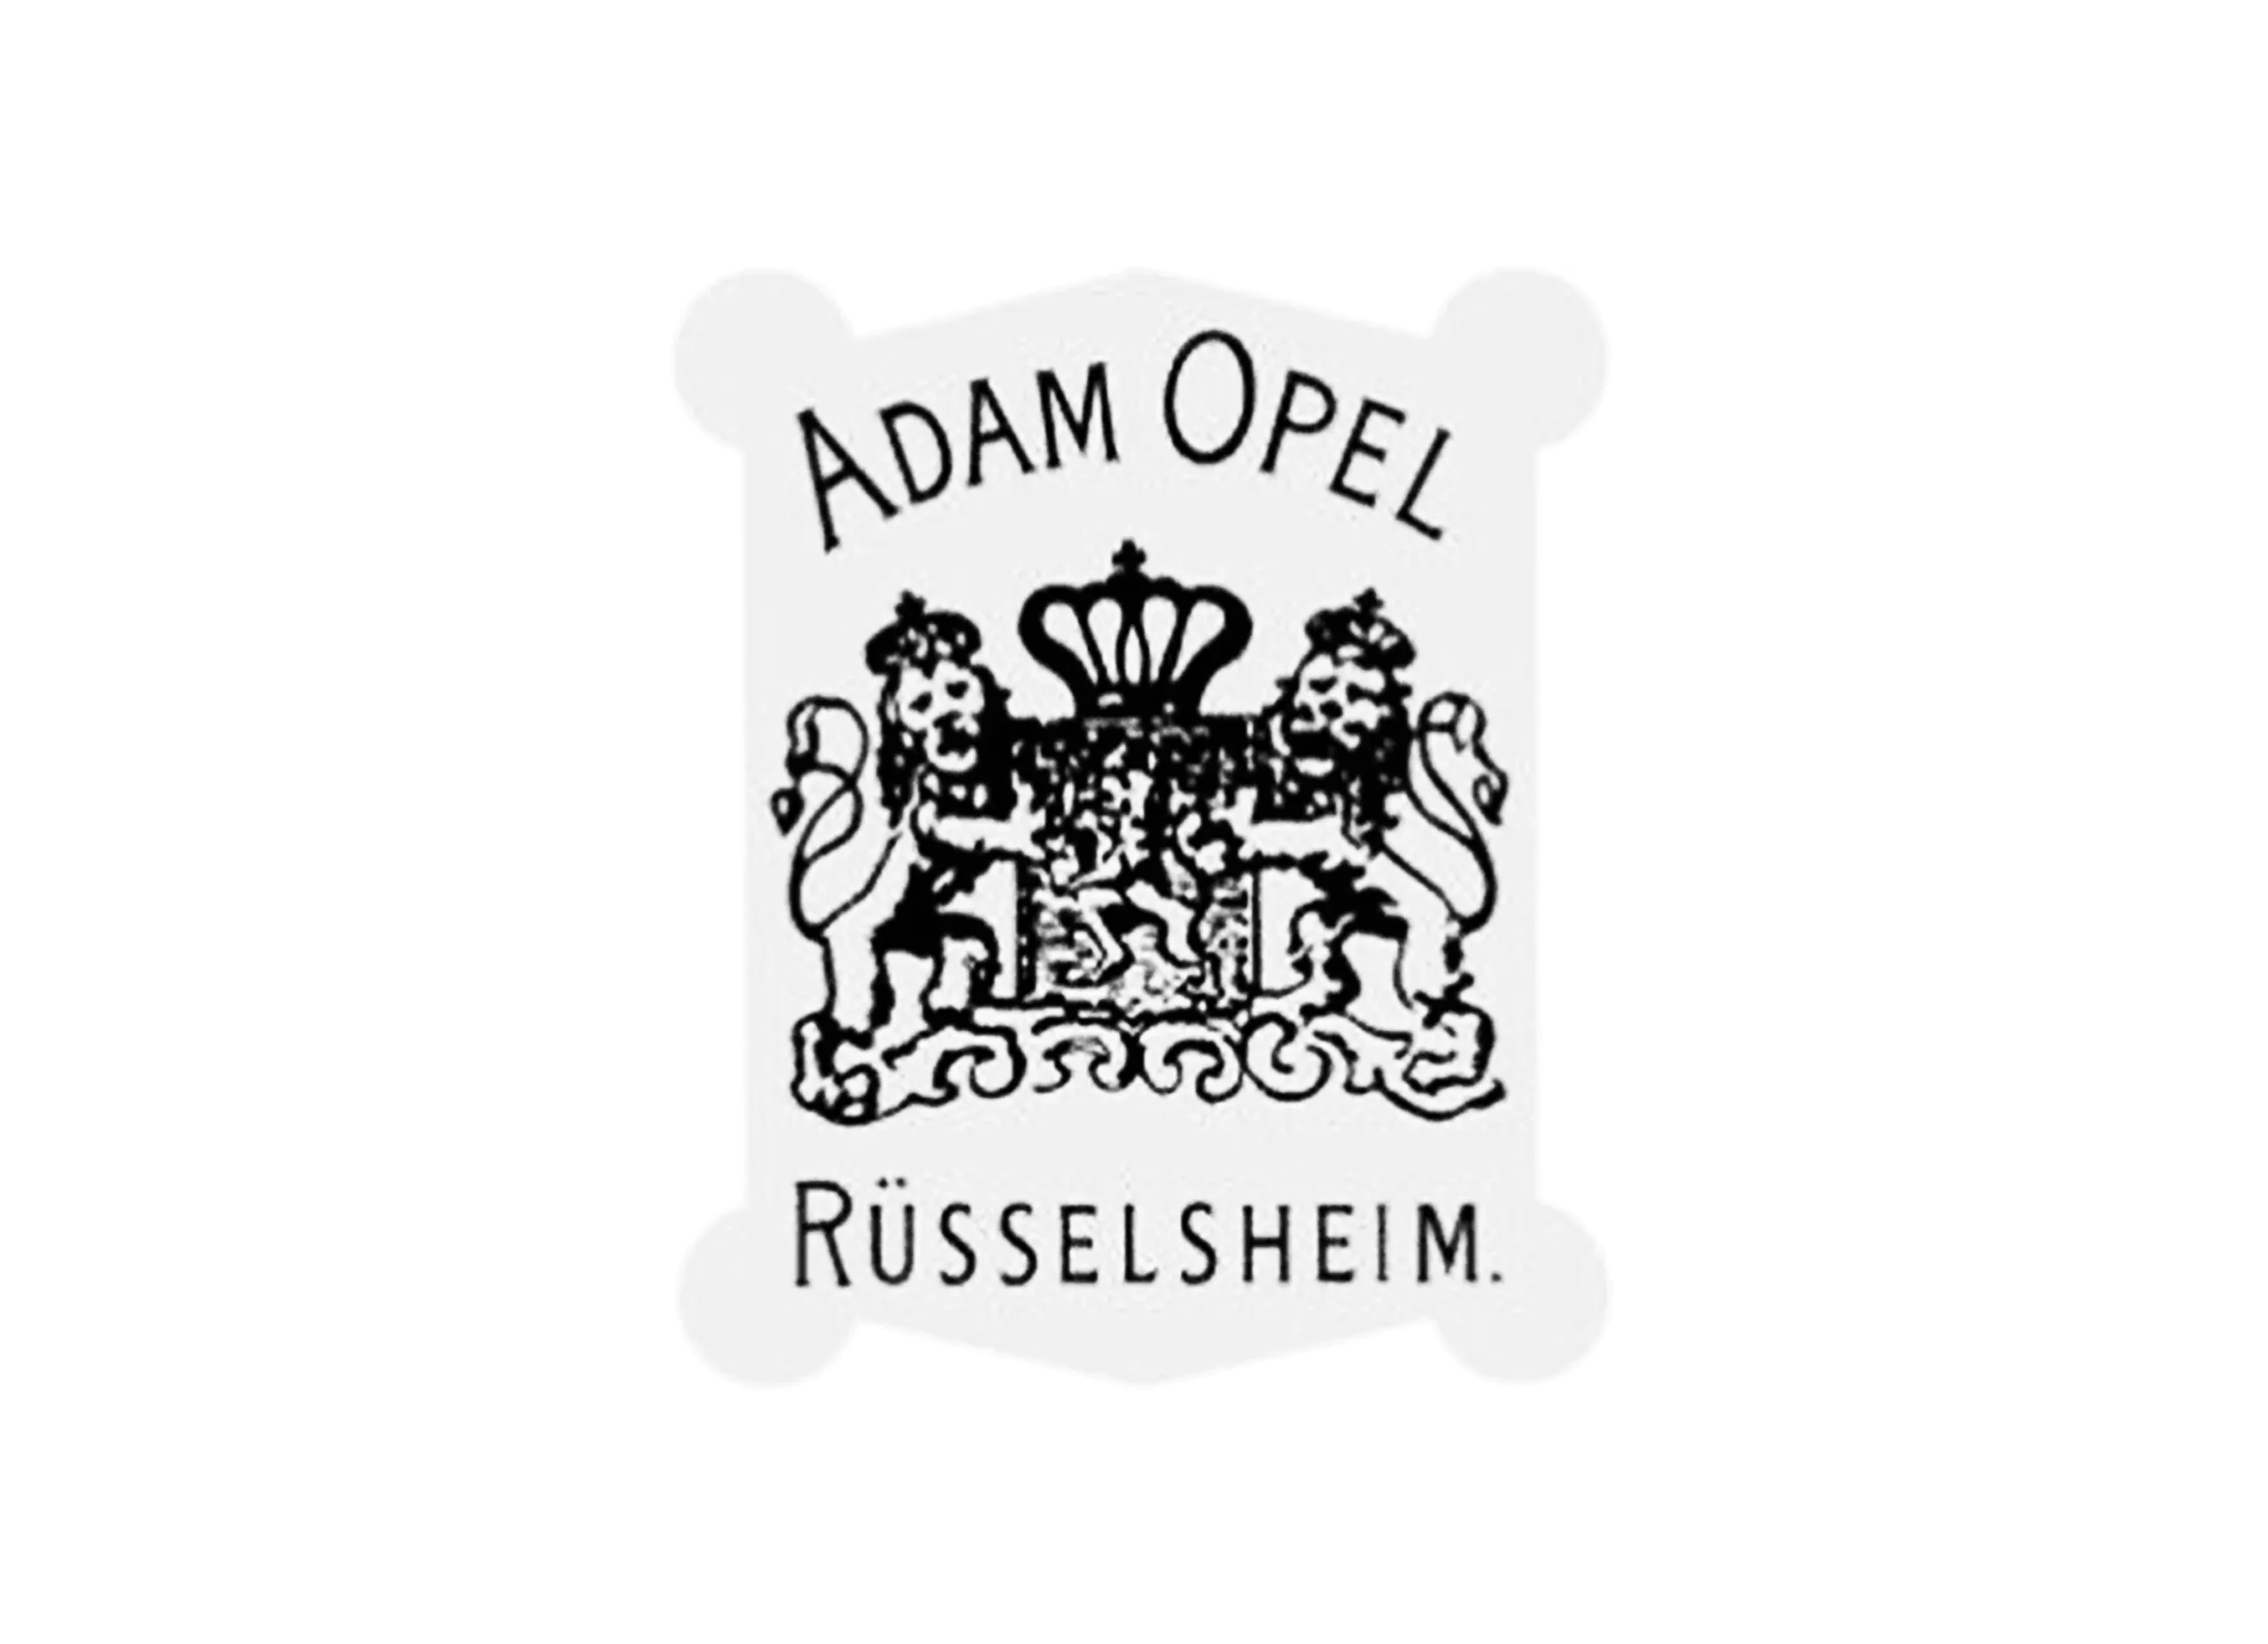 Opel logo 1888-1889